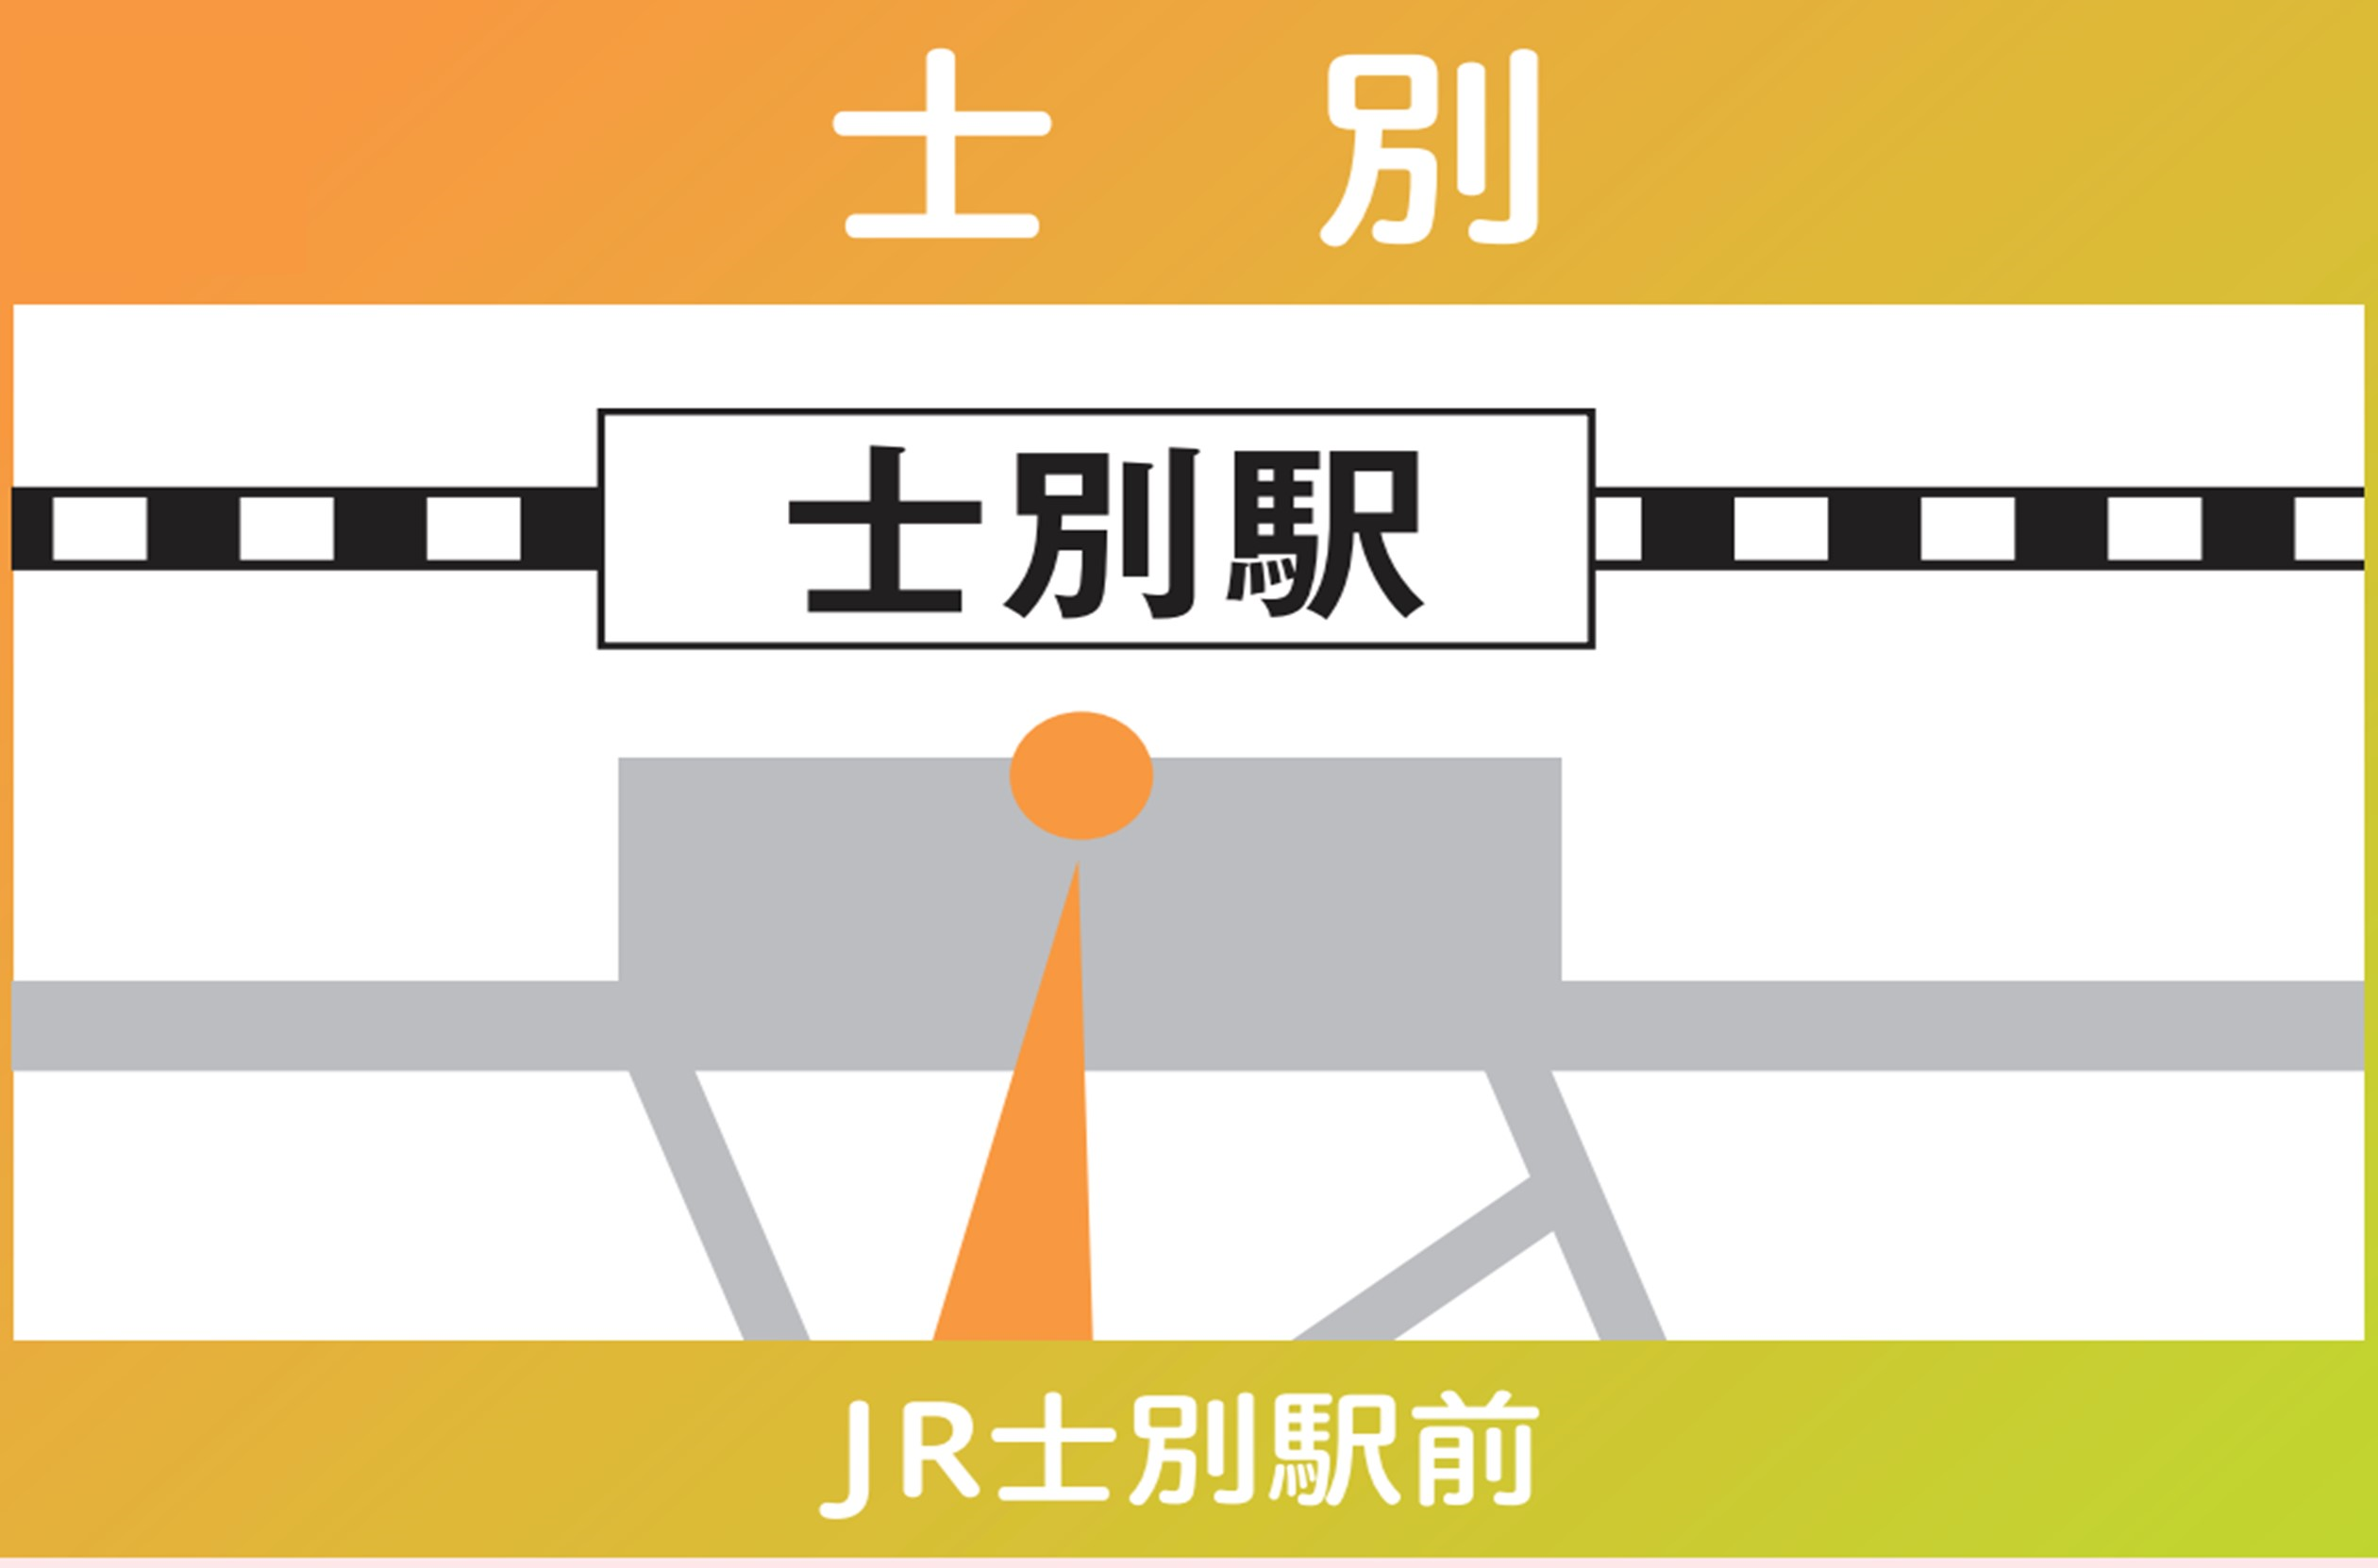 地図：士別（JR士別駅前）※2024年3/30㈯限定運行